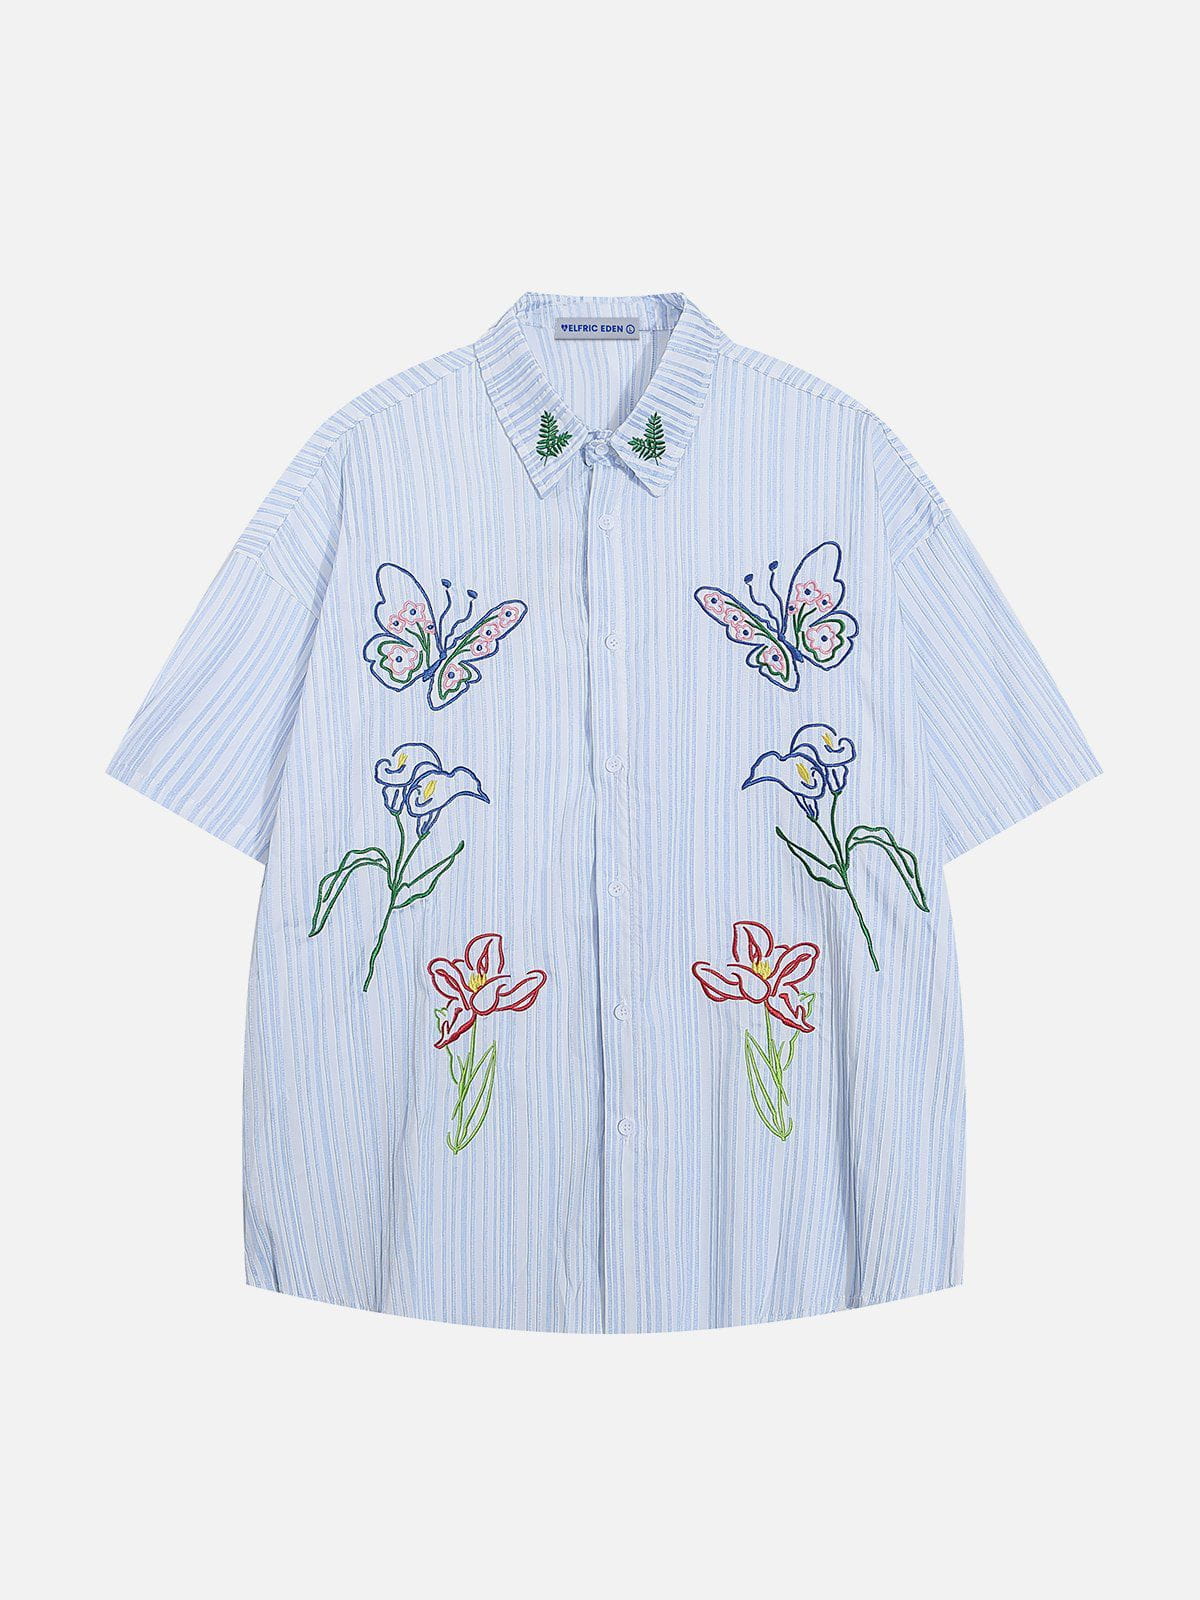 Aelfric Eden Butterfly Flower Short Sleeve Shirt